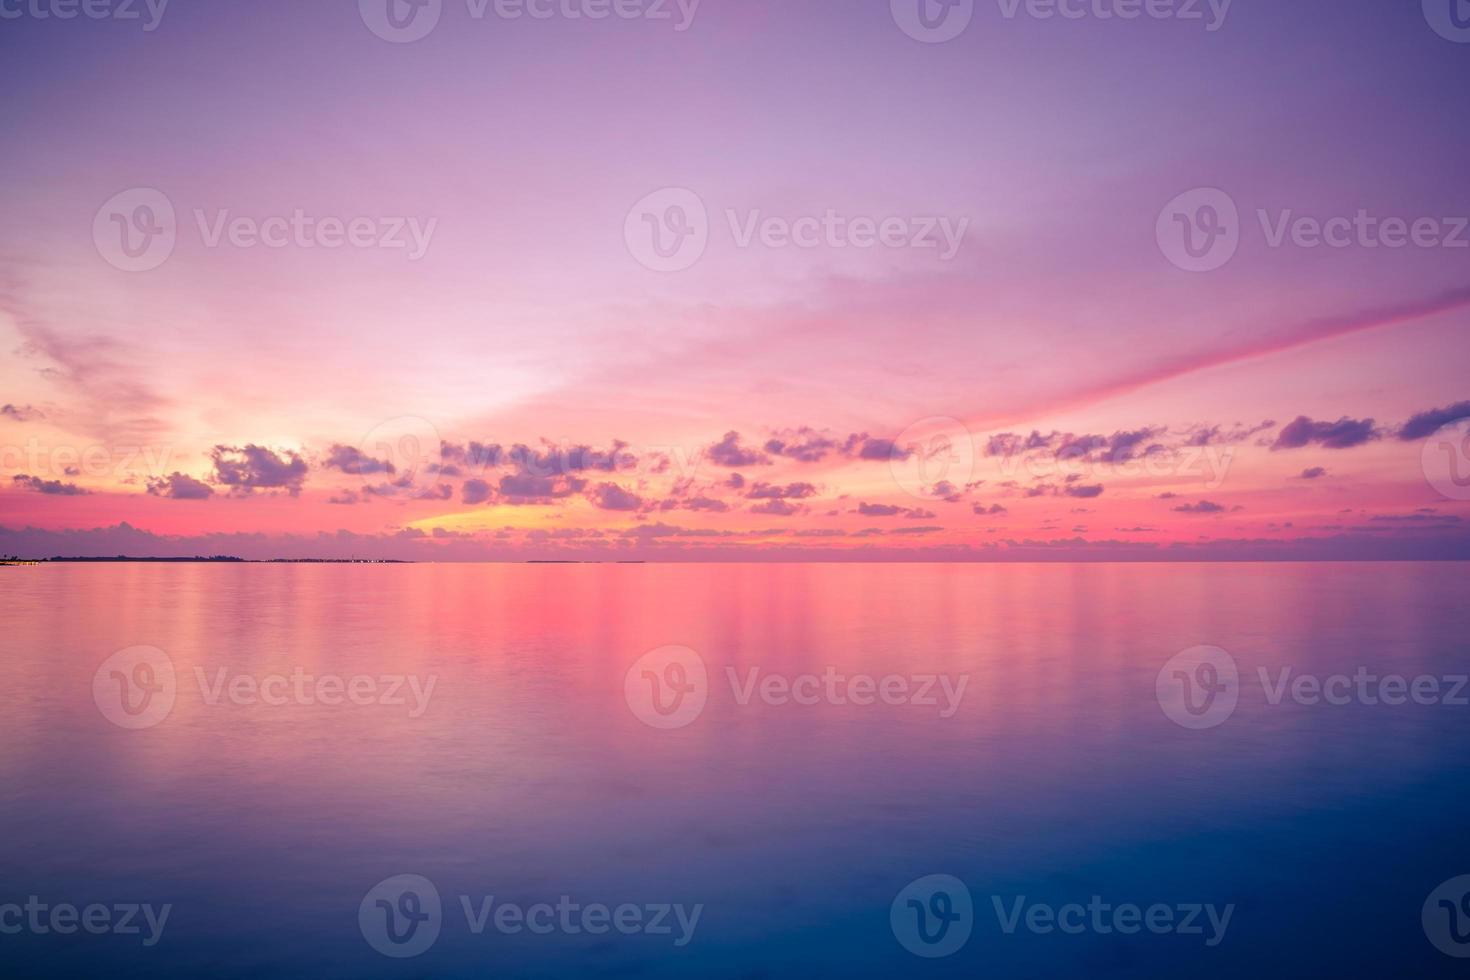 magnifique vue mer coucher de soleil, horizon lumineux. belle vue inspirante sur la plage et la mer, réflexion. paysage marin coloré du soir - skyscape. concept nature zen, calme, détente photo